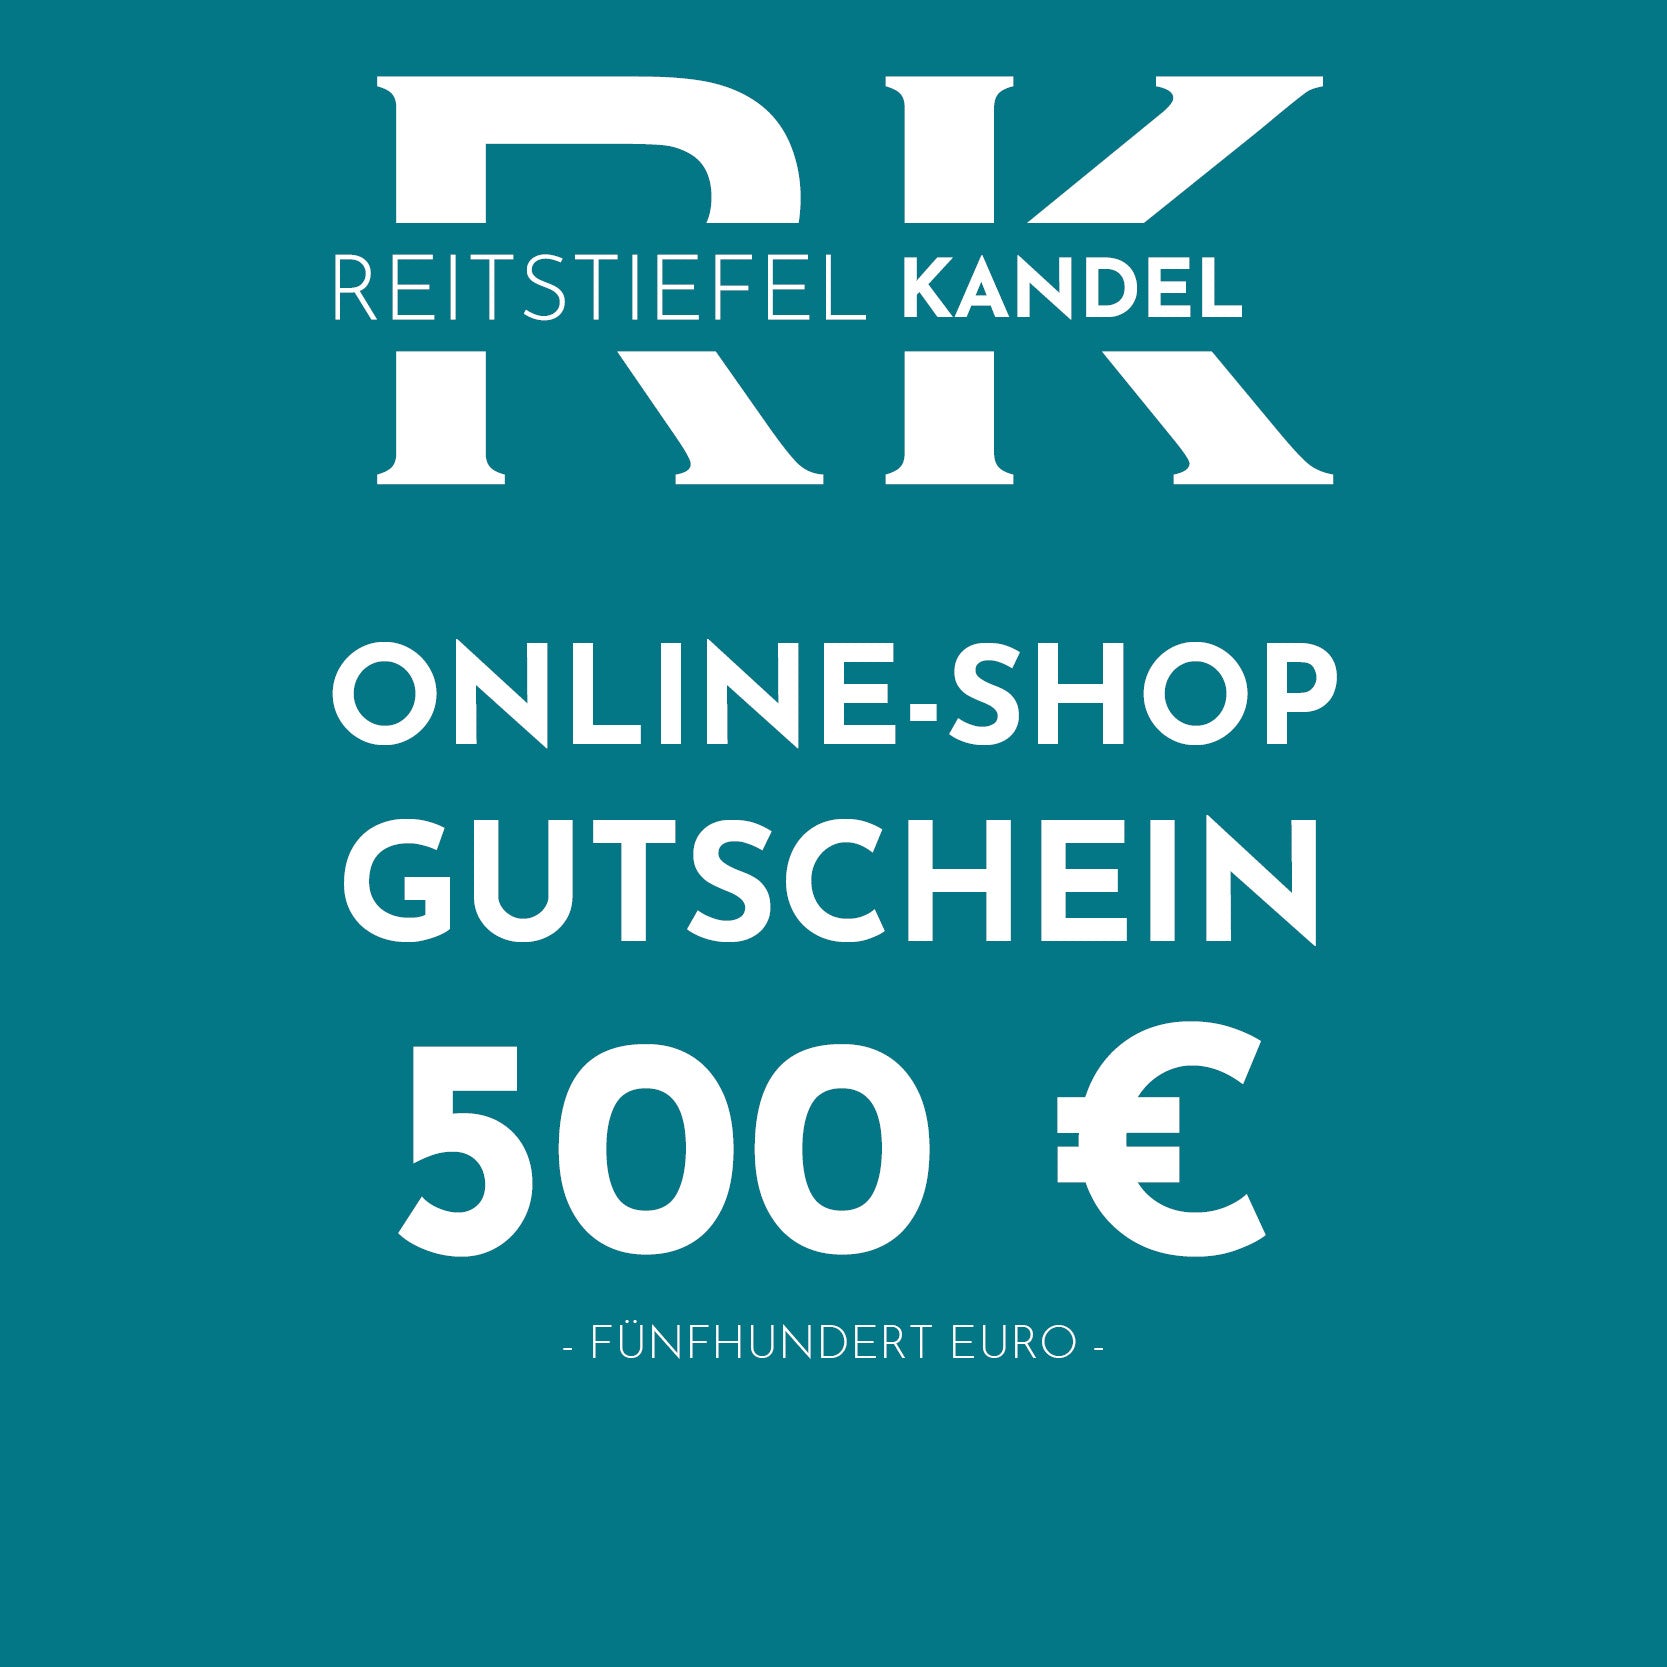 Online-Shop Gutschein - Reitstiefel Kandel